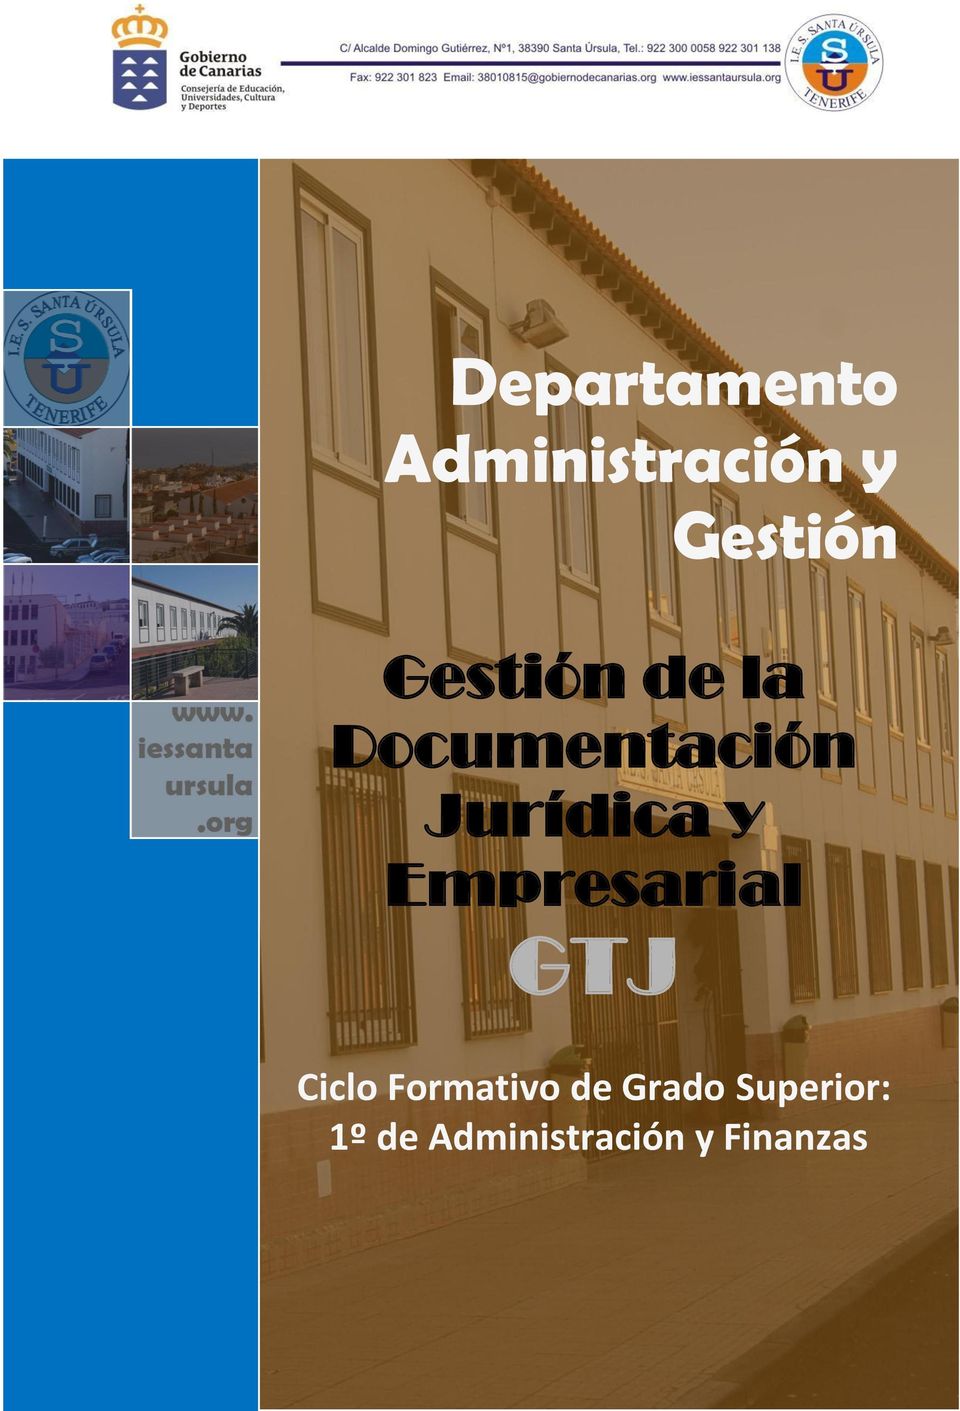 Administración y Gestión Documentación Jurídica y Tratamiento Empresarial de la